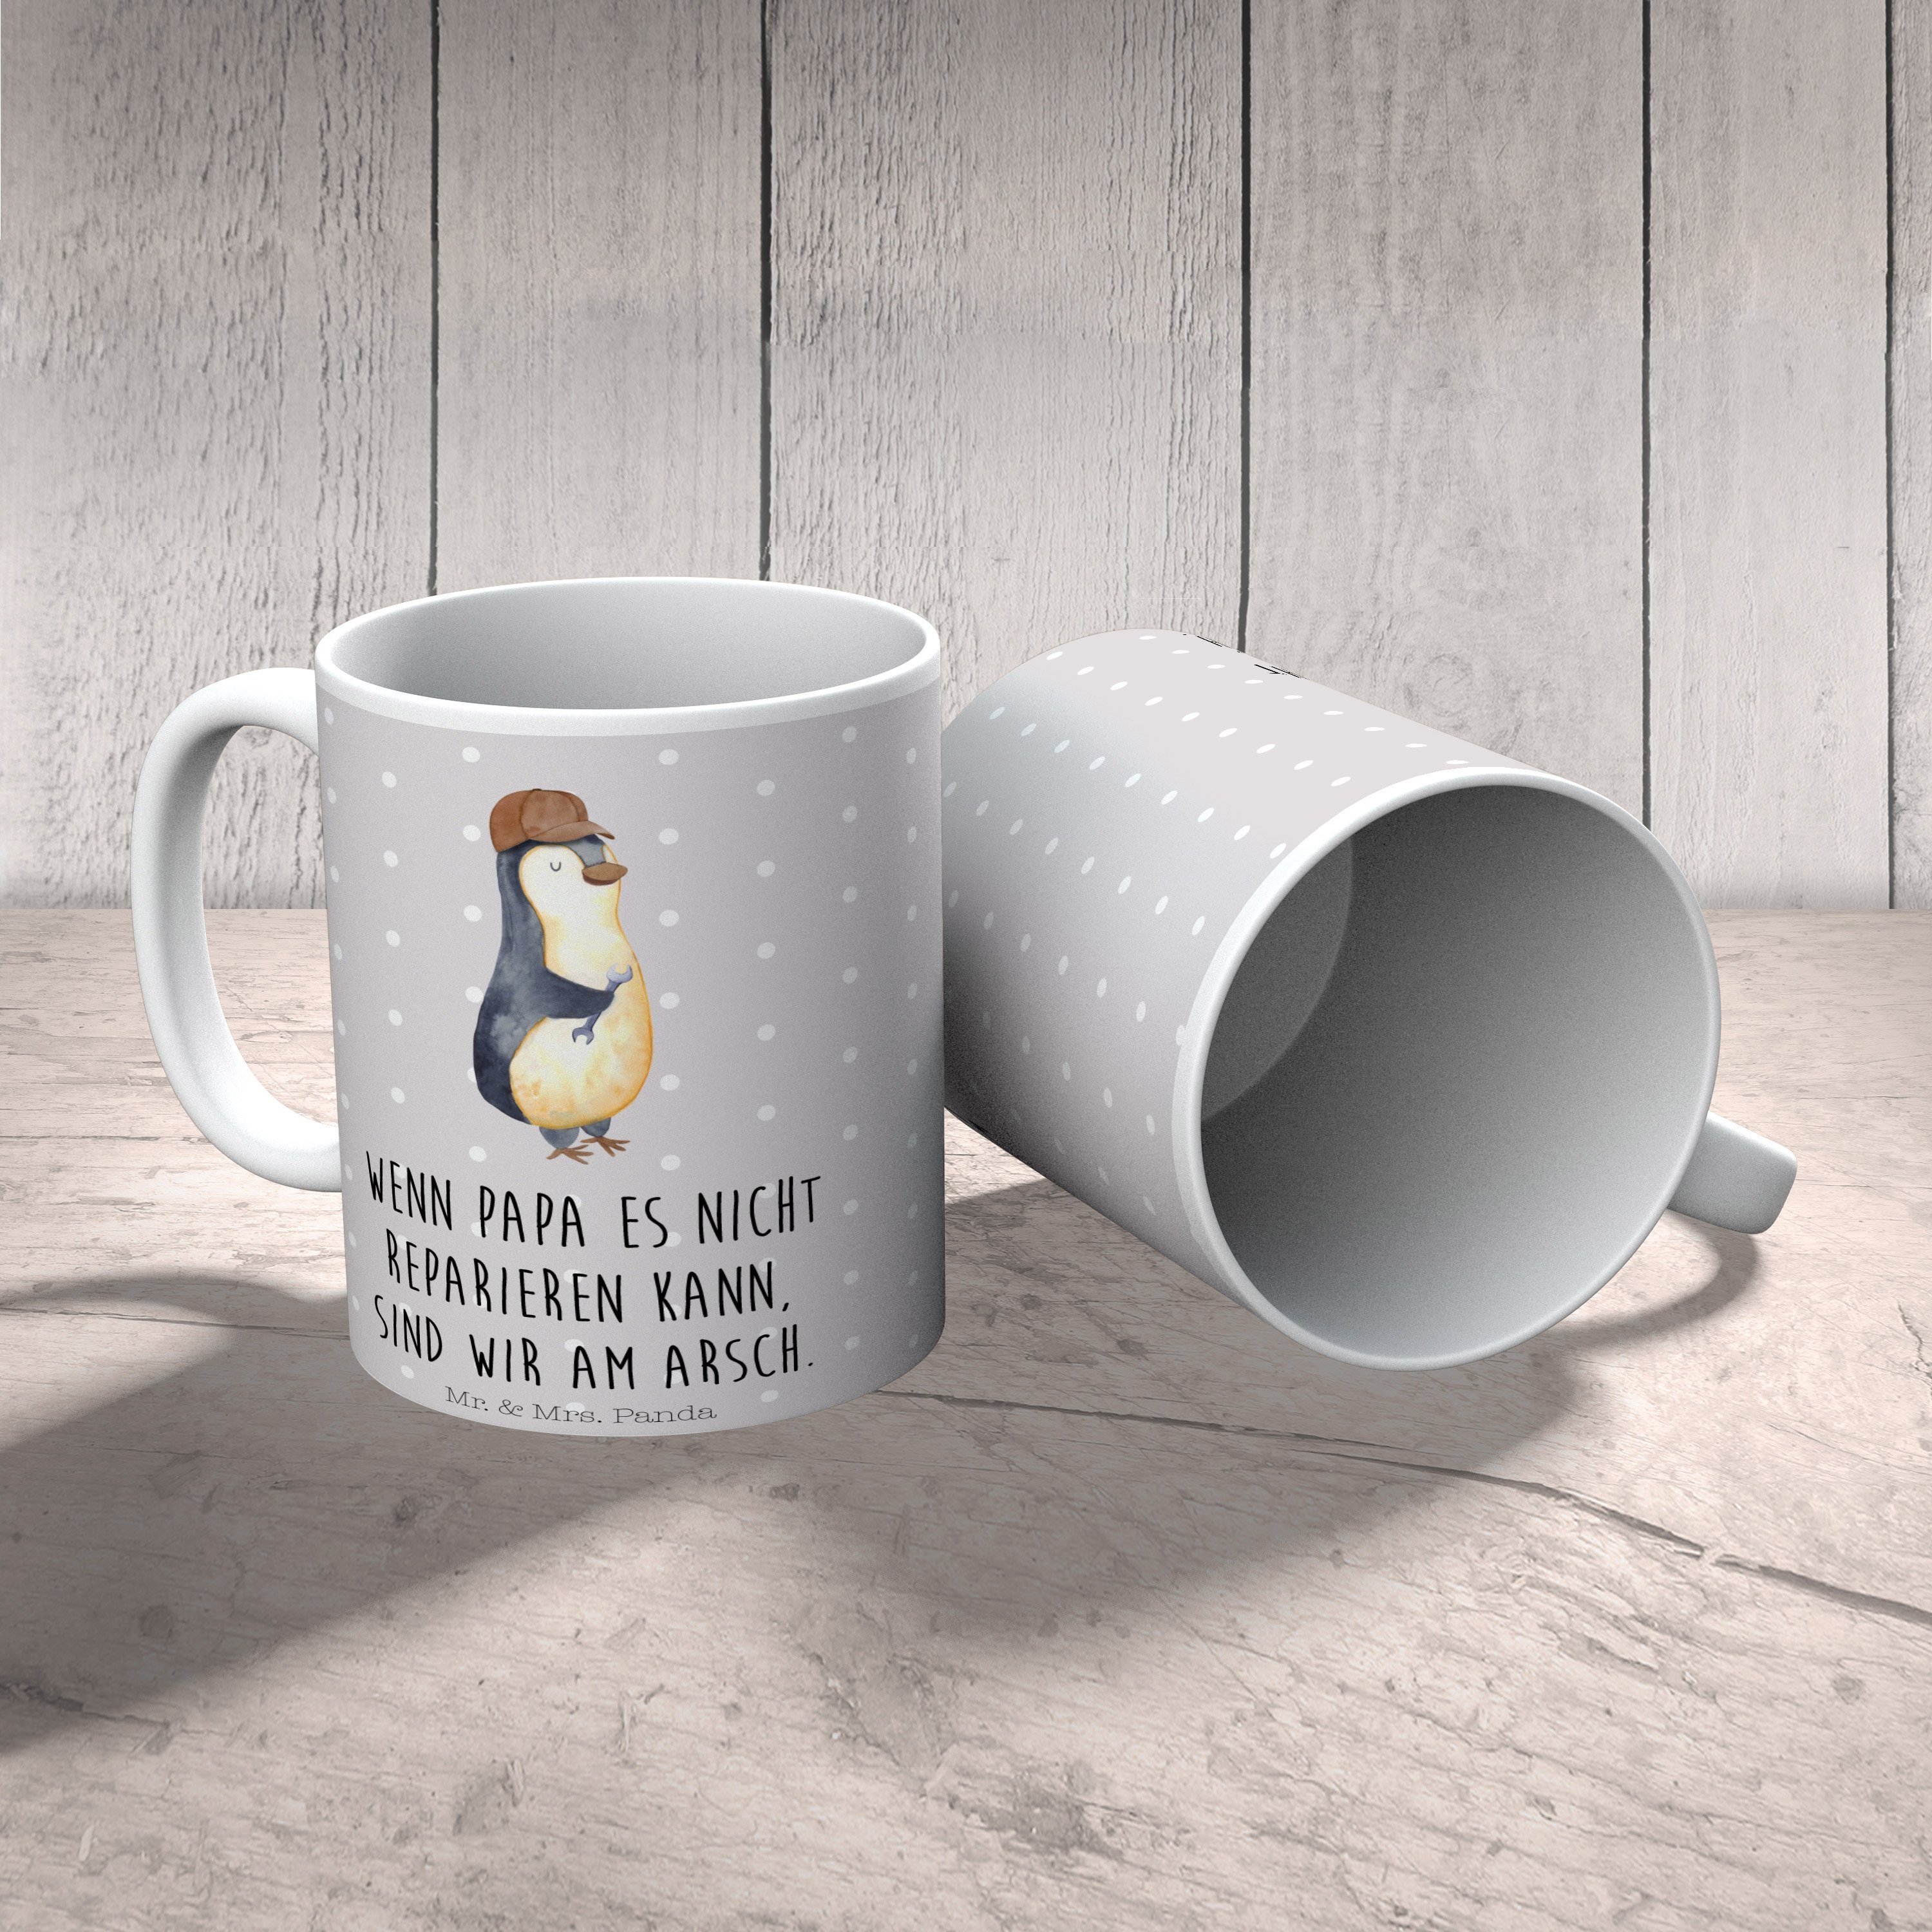 Mr. & Mrs. Panda Tasse Pinguin mit Schraubenschlüssel - Grau Pastell - Geschenk, Keramiktass, Keramik